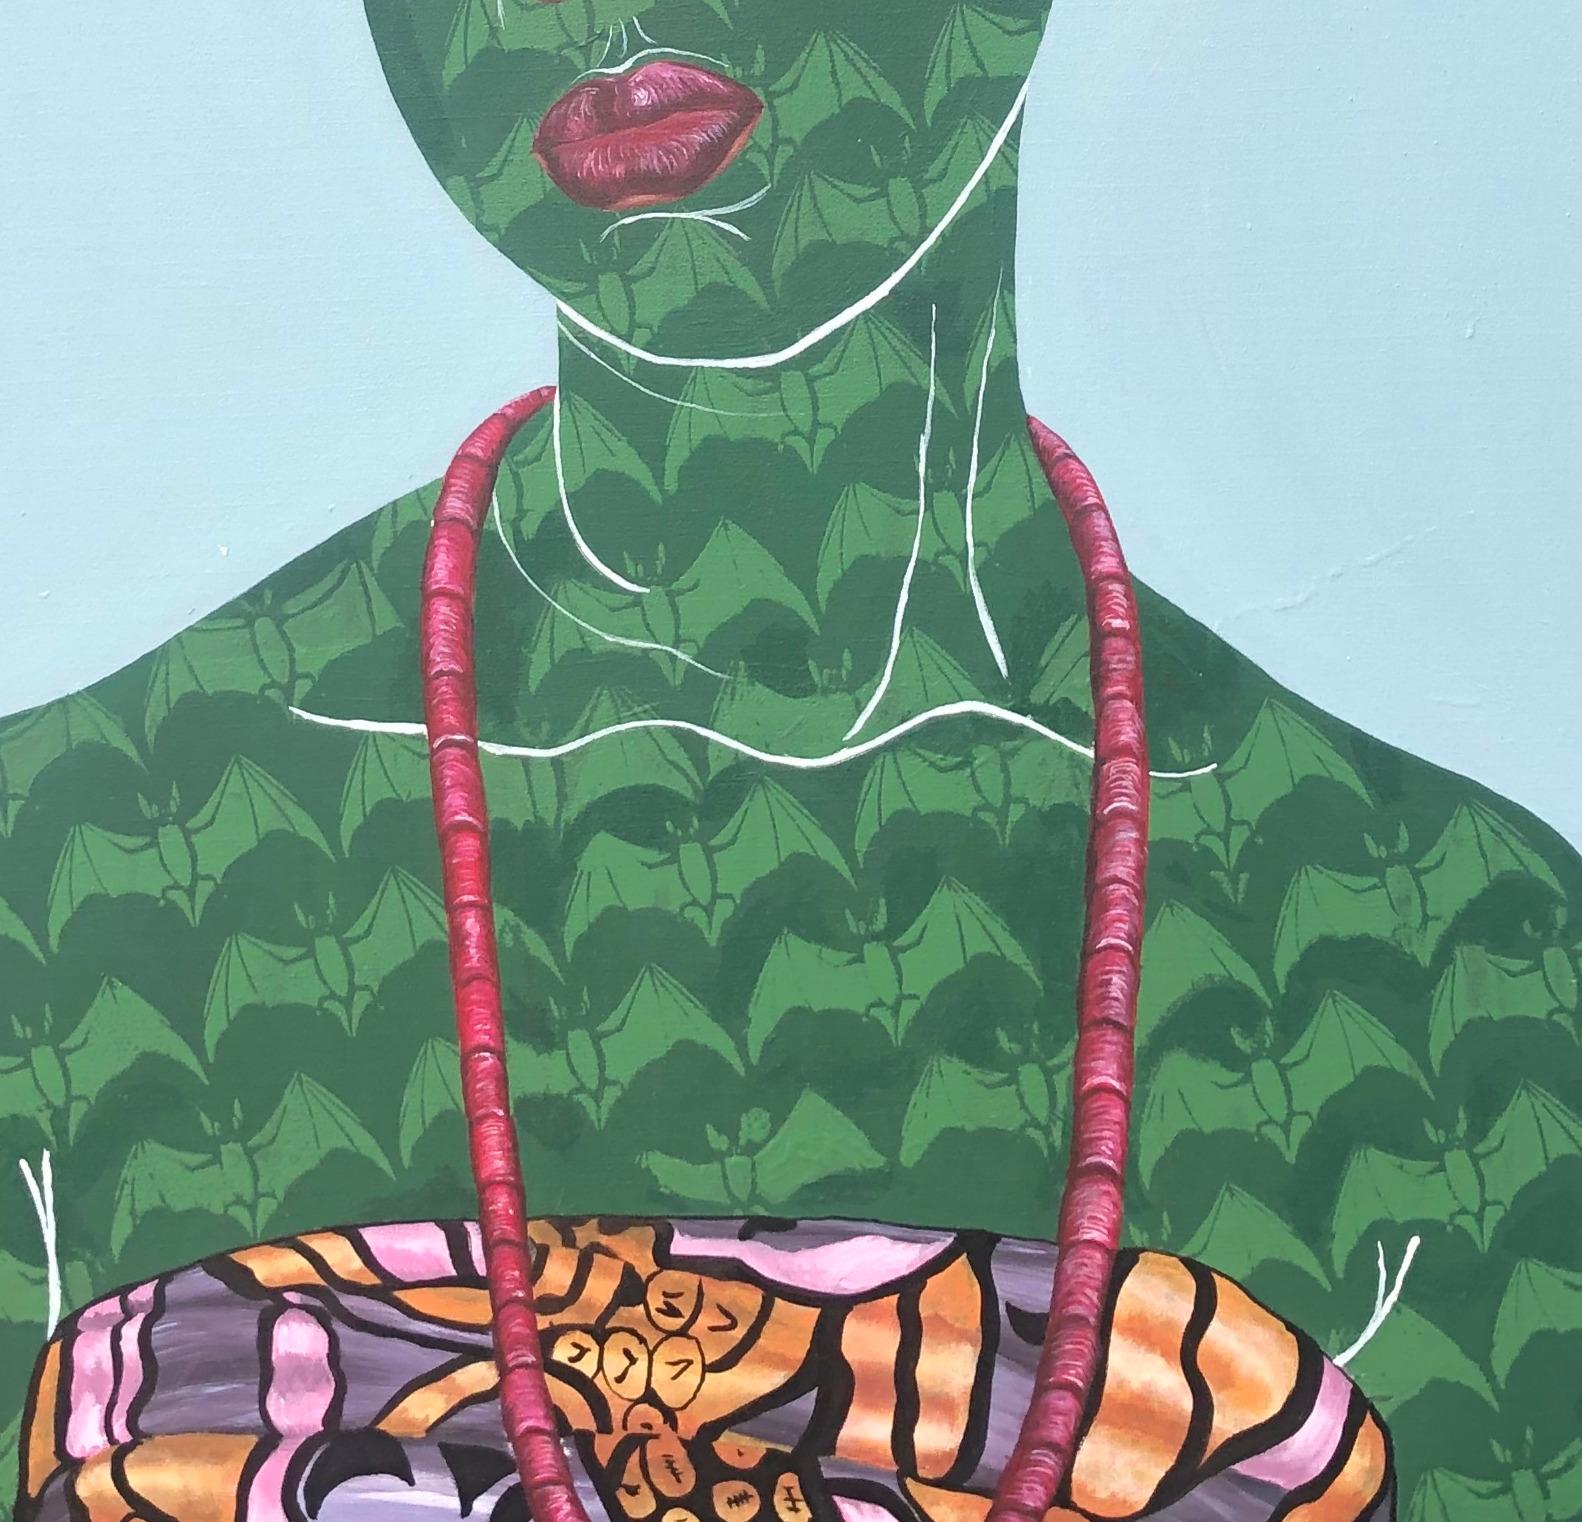 GÈLÈ 1 (cravate de tête) - Pop Art Painting par Oluwafemi Afolabi